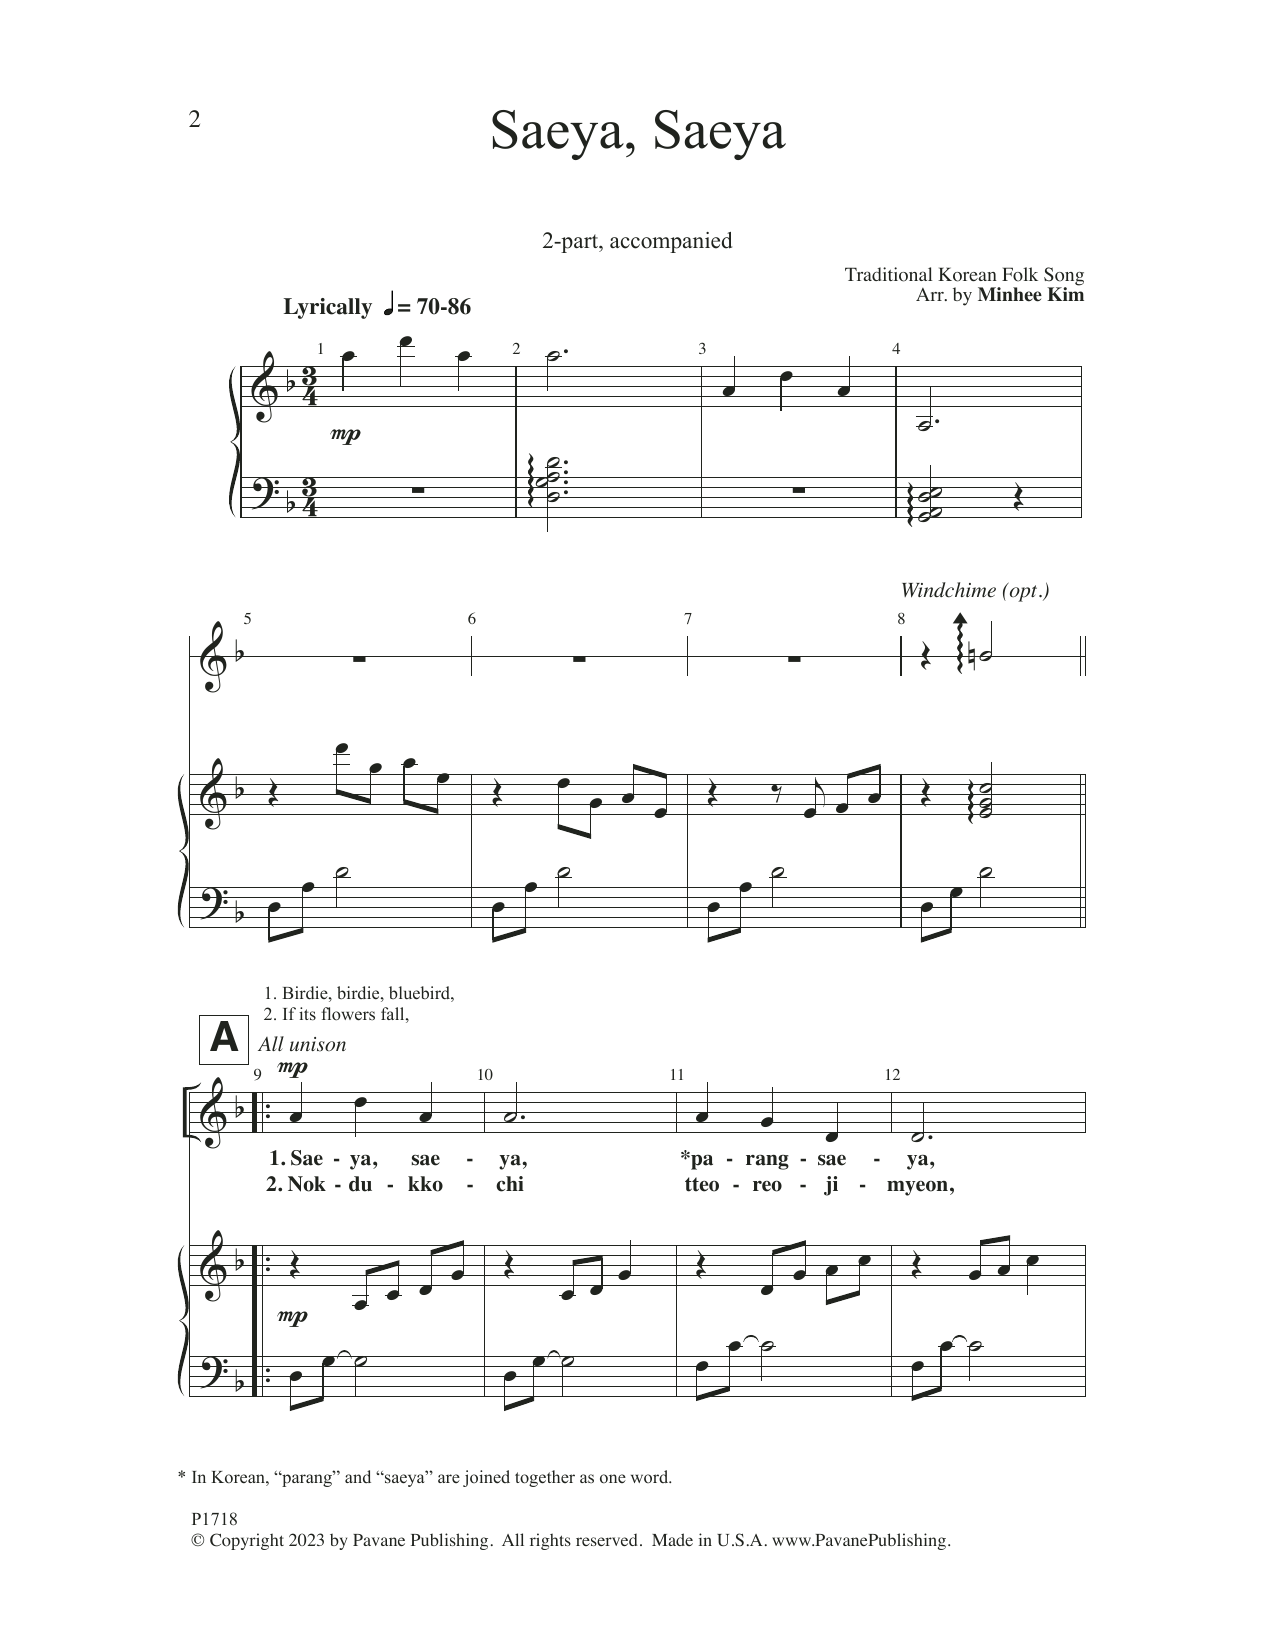 Minhee Kim Saeya, Saeya Sheet Music Notes & Chords for 2-Part Choir - Download or Print PDF